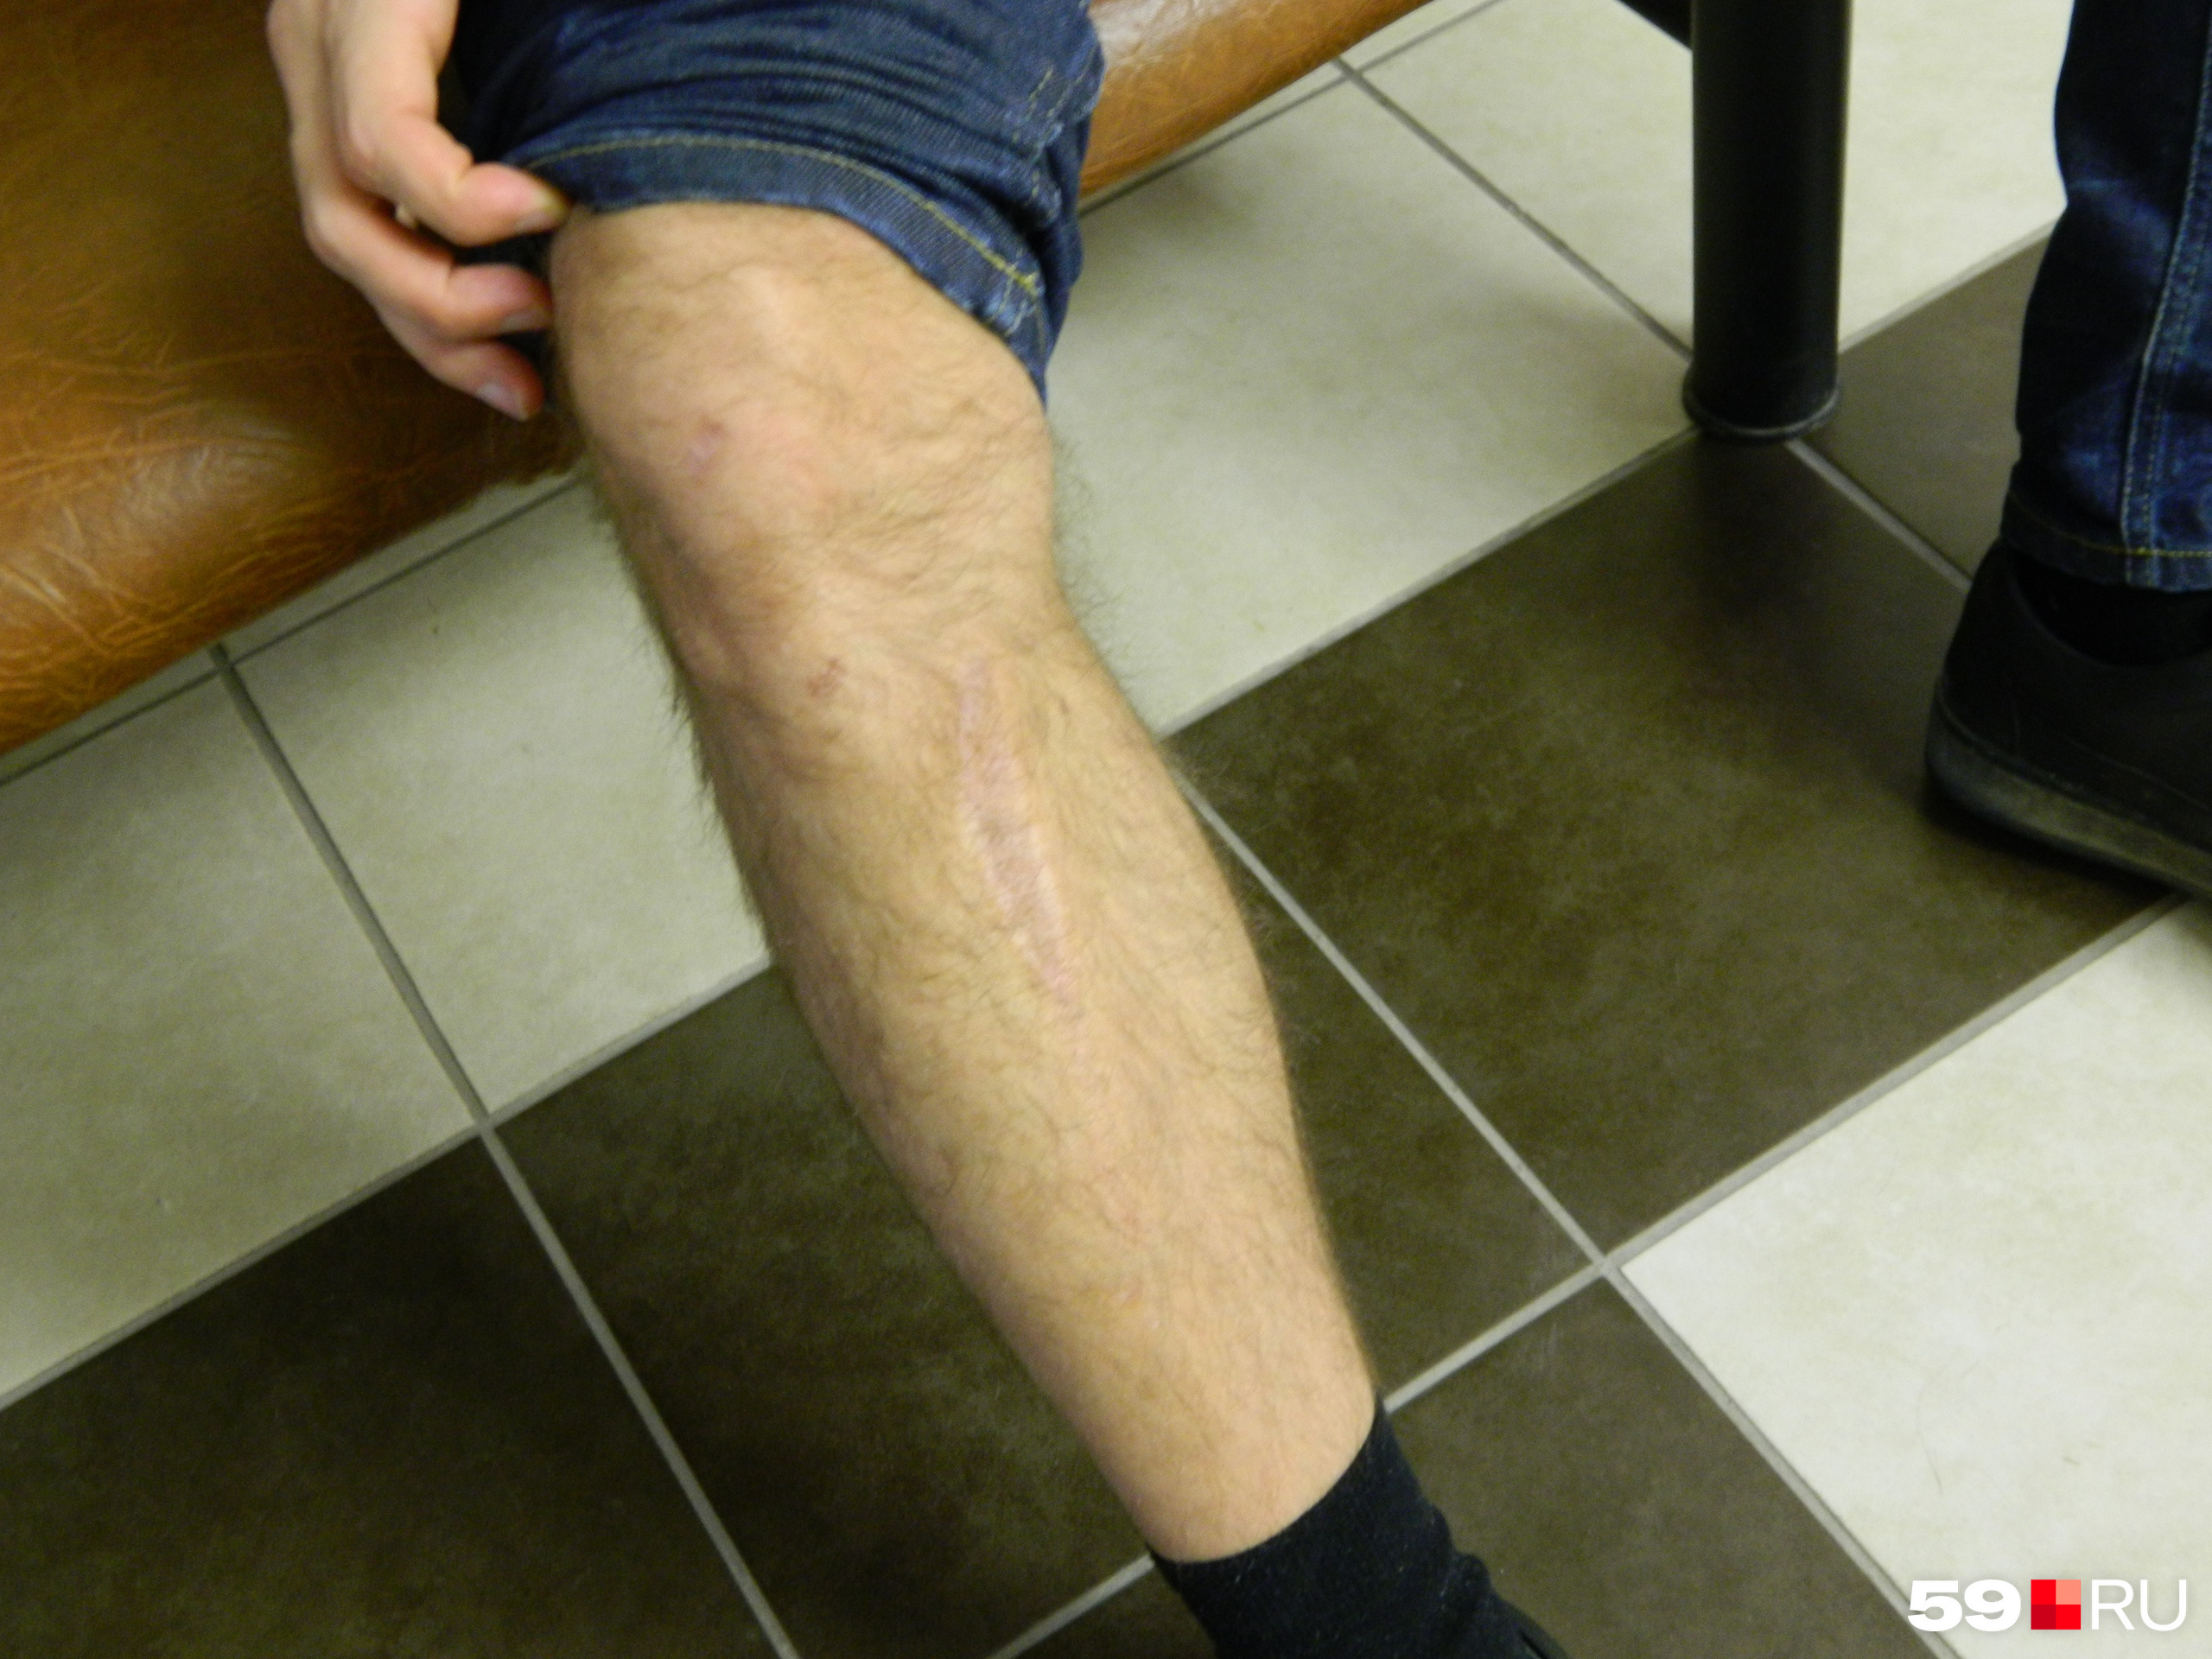 Никита закатывает штанину на правой ноге, показывает отметины — шрамы и длинный рубец